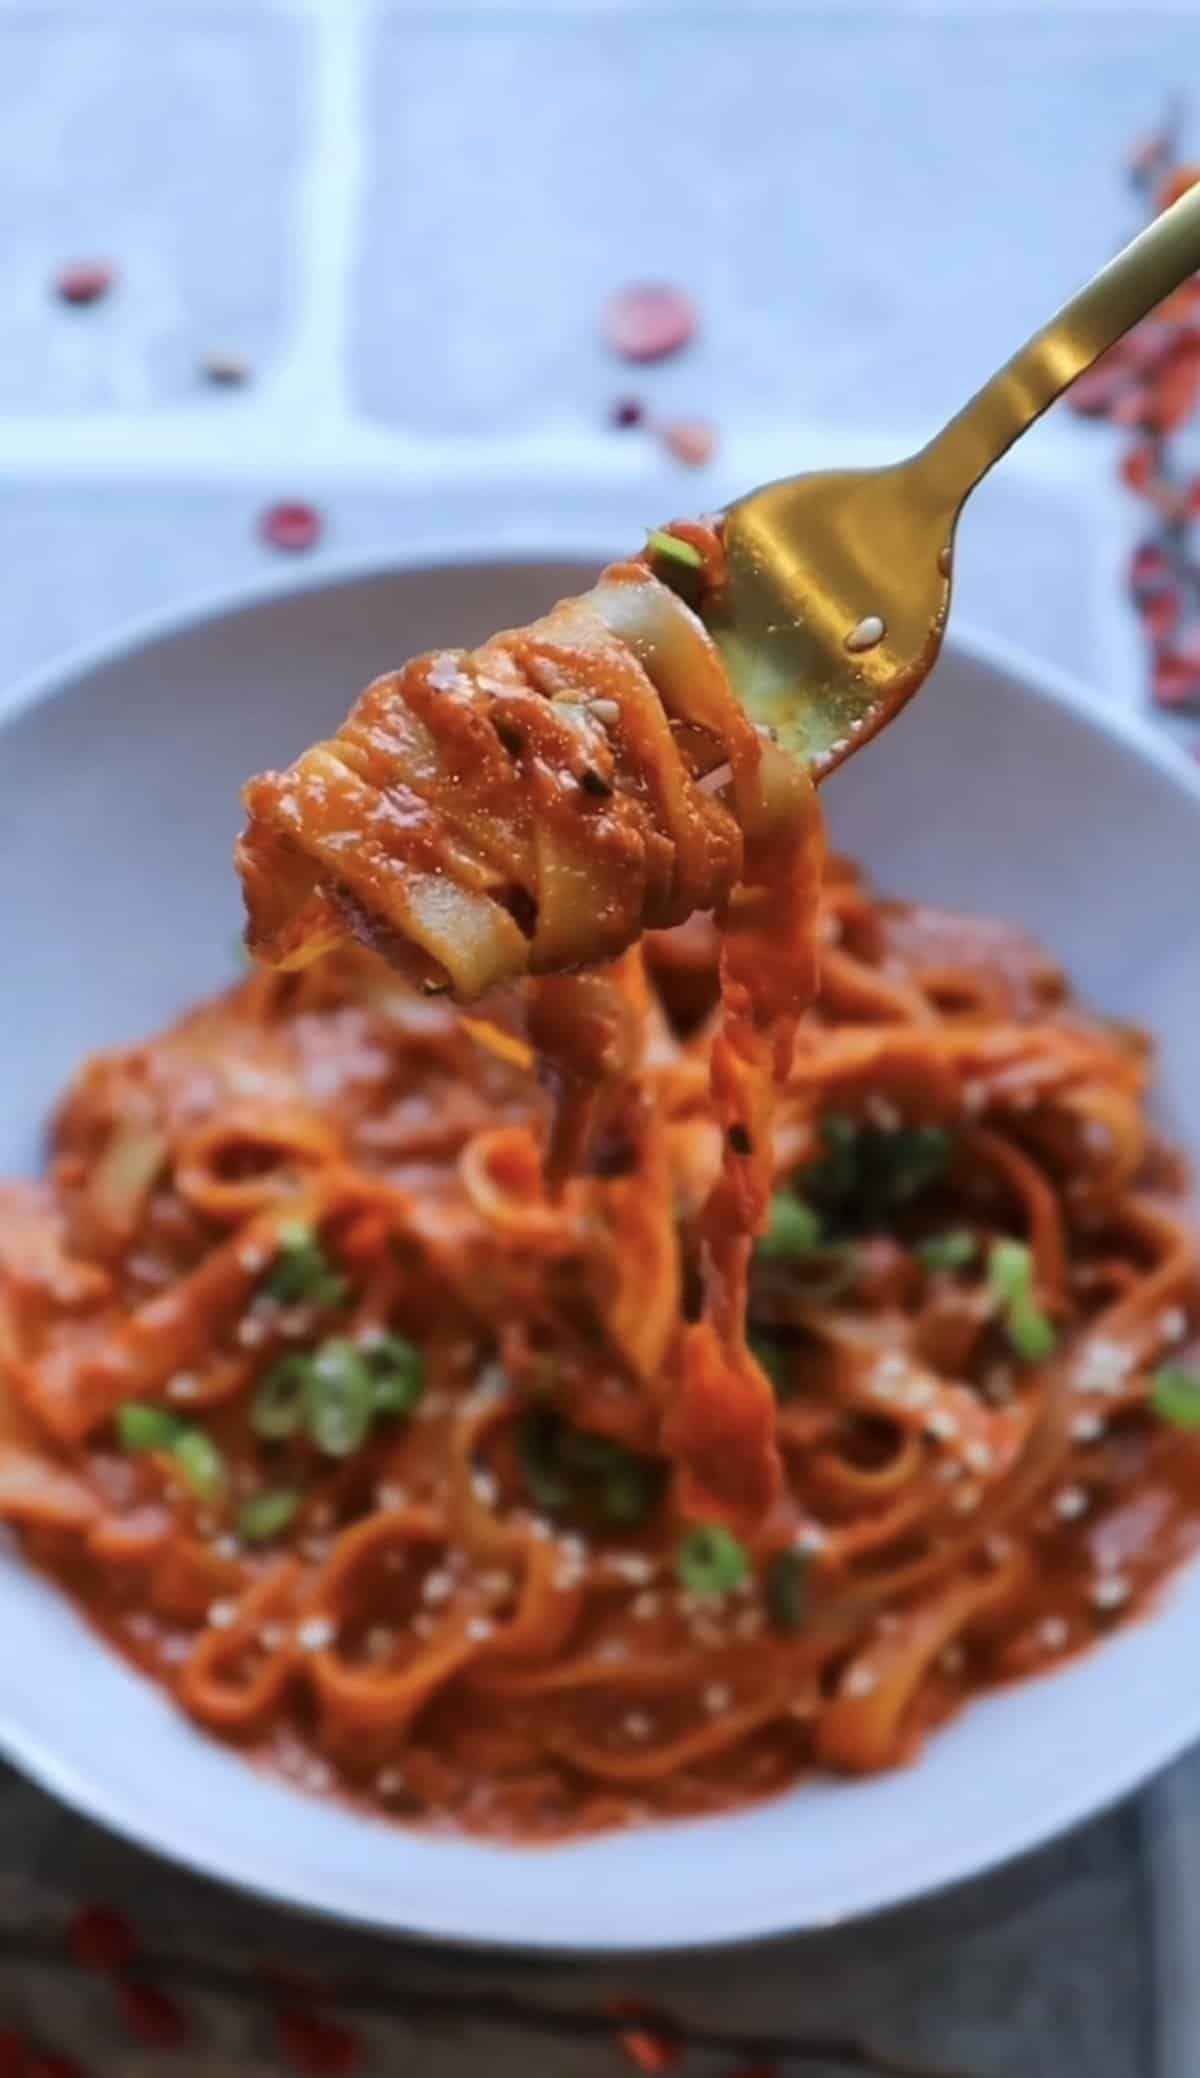 Gochujang pasta in a bowl